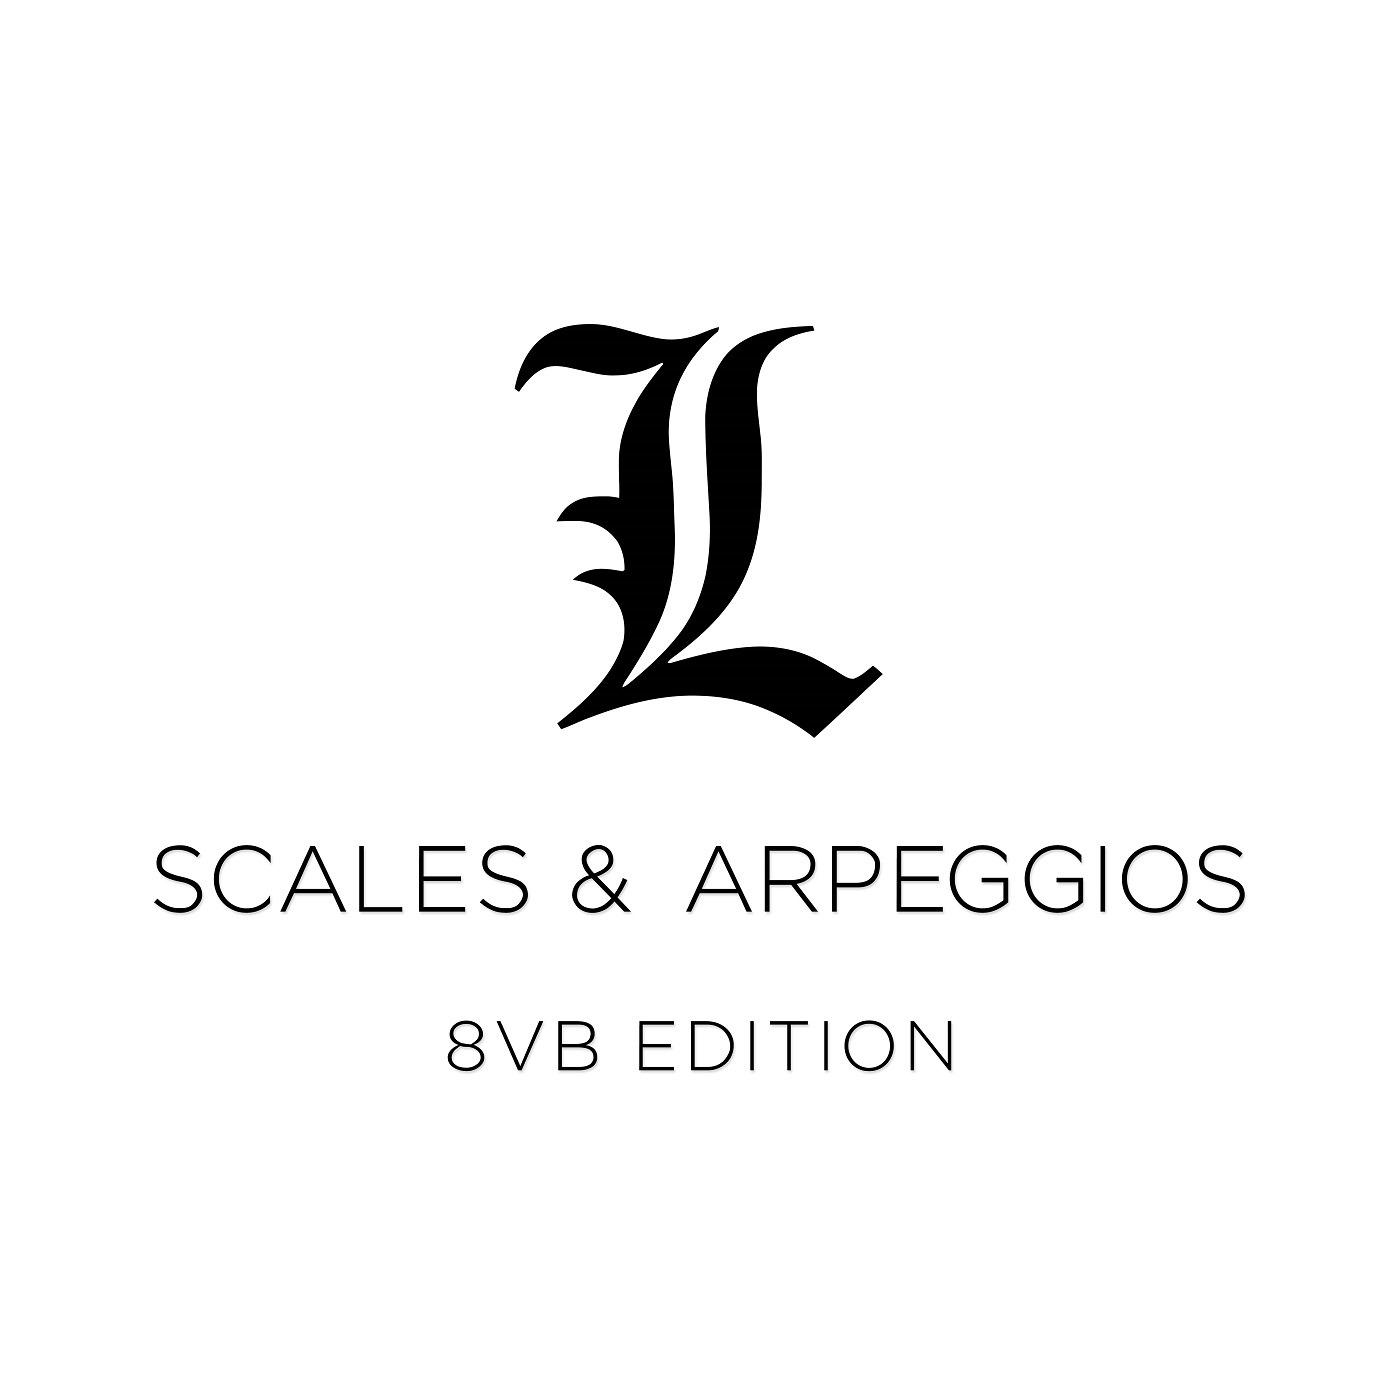 Scales & Arpeggios - 8vb Edition - Major Scales